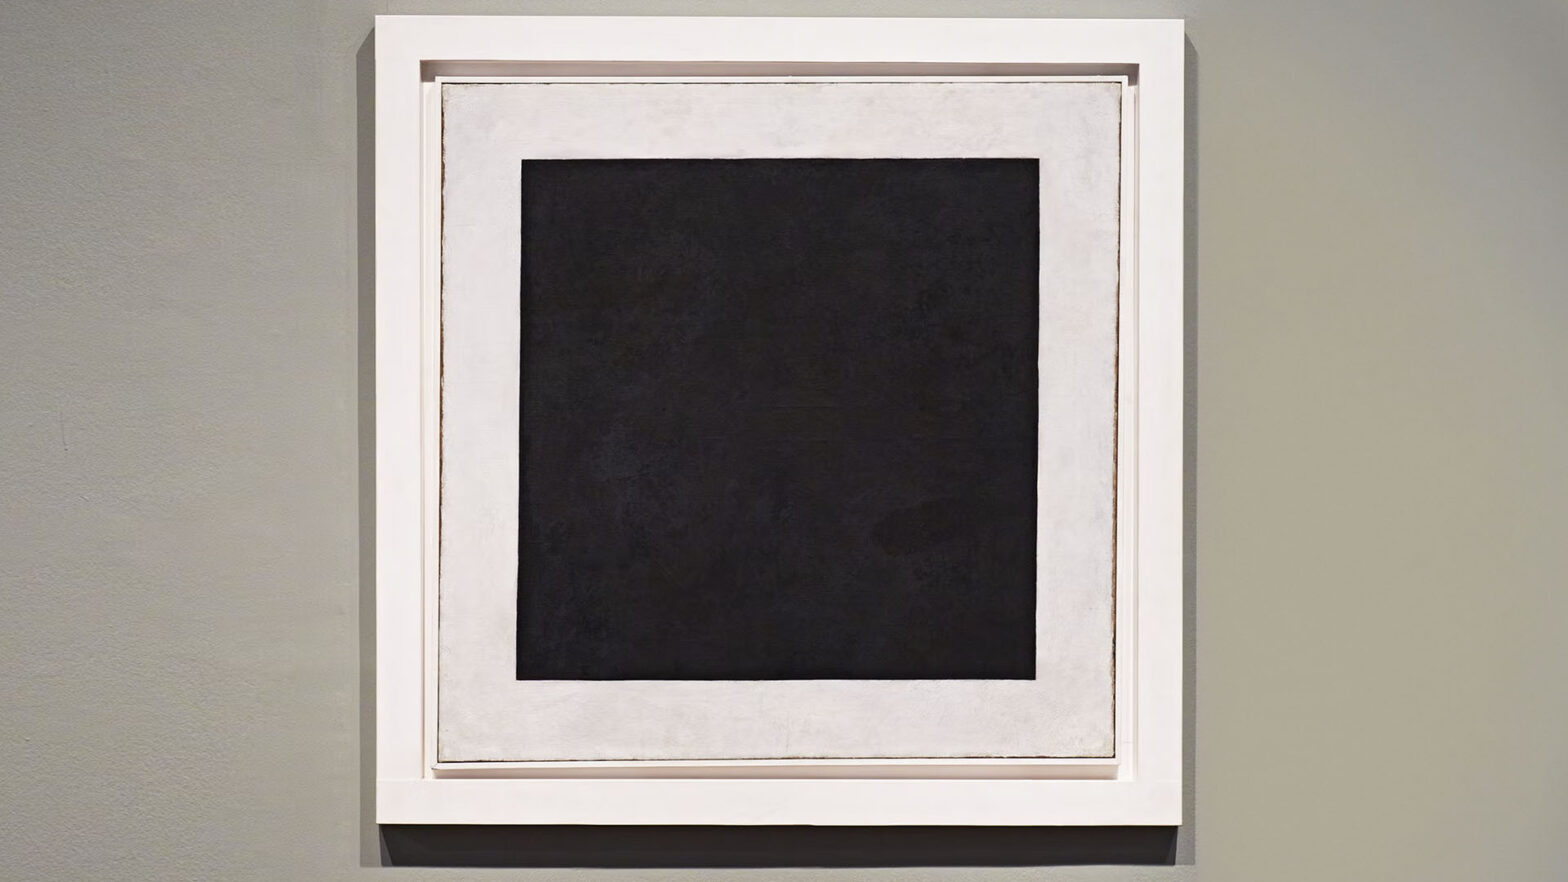 Wykonane w miejscu ekspozycji zdjęcie obrazu Kazimierza Malewicza Czarny kwadrat na białym tle. Płótno ma kształt kwadratu, w środku obrazu czarny kwadrat o lekko nierównych krawędziach, dookoła kwadratu białe tło. Rama ma również kolor biały. Ściana galerii ma delikatną fakturę, jest koloru beżowego.